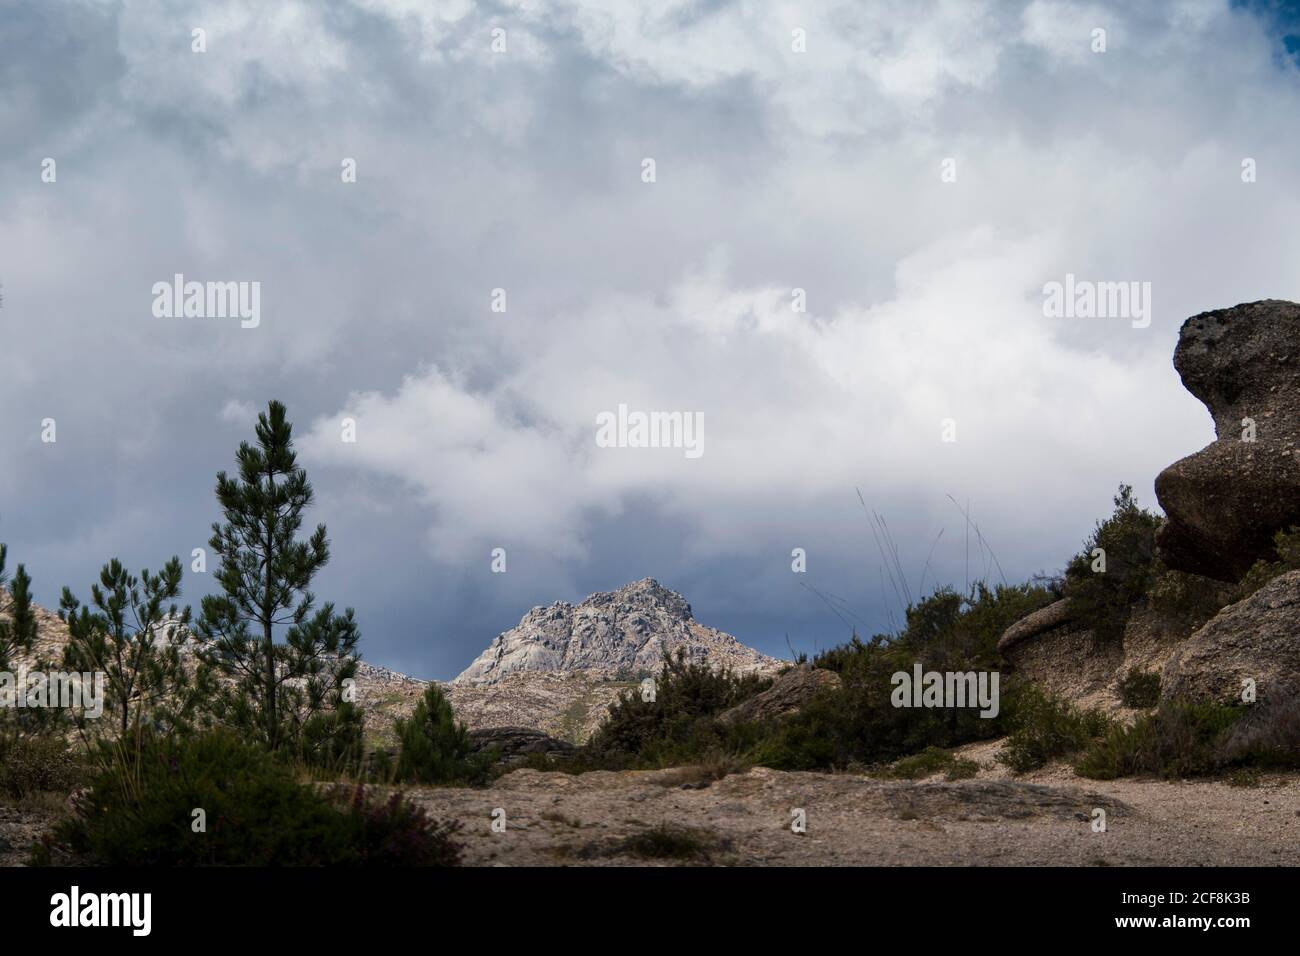 Vetta montana che mostra in lontananza, dietro un sentiero e più montagne e valli, ombreggiate da un cielo nuvoloso Foto Stock